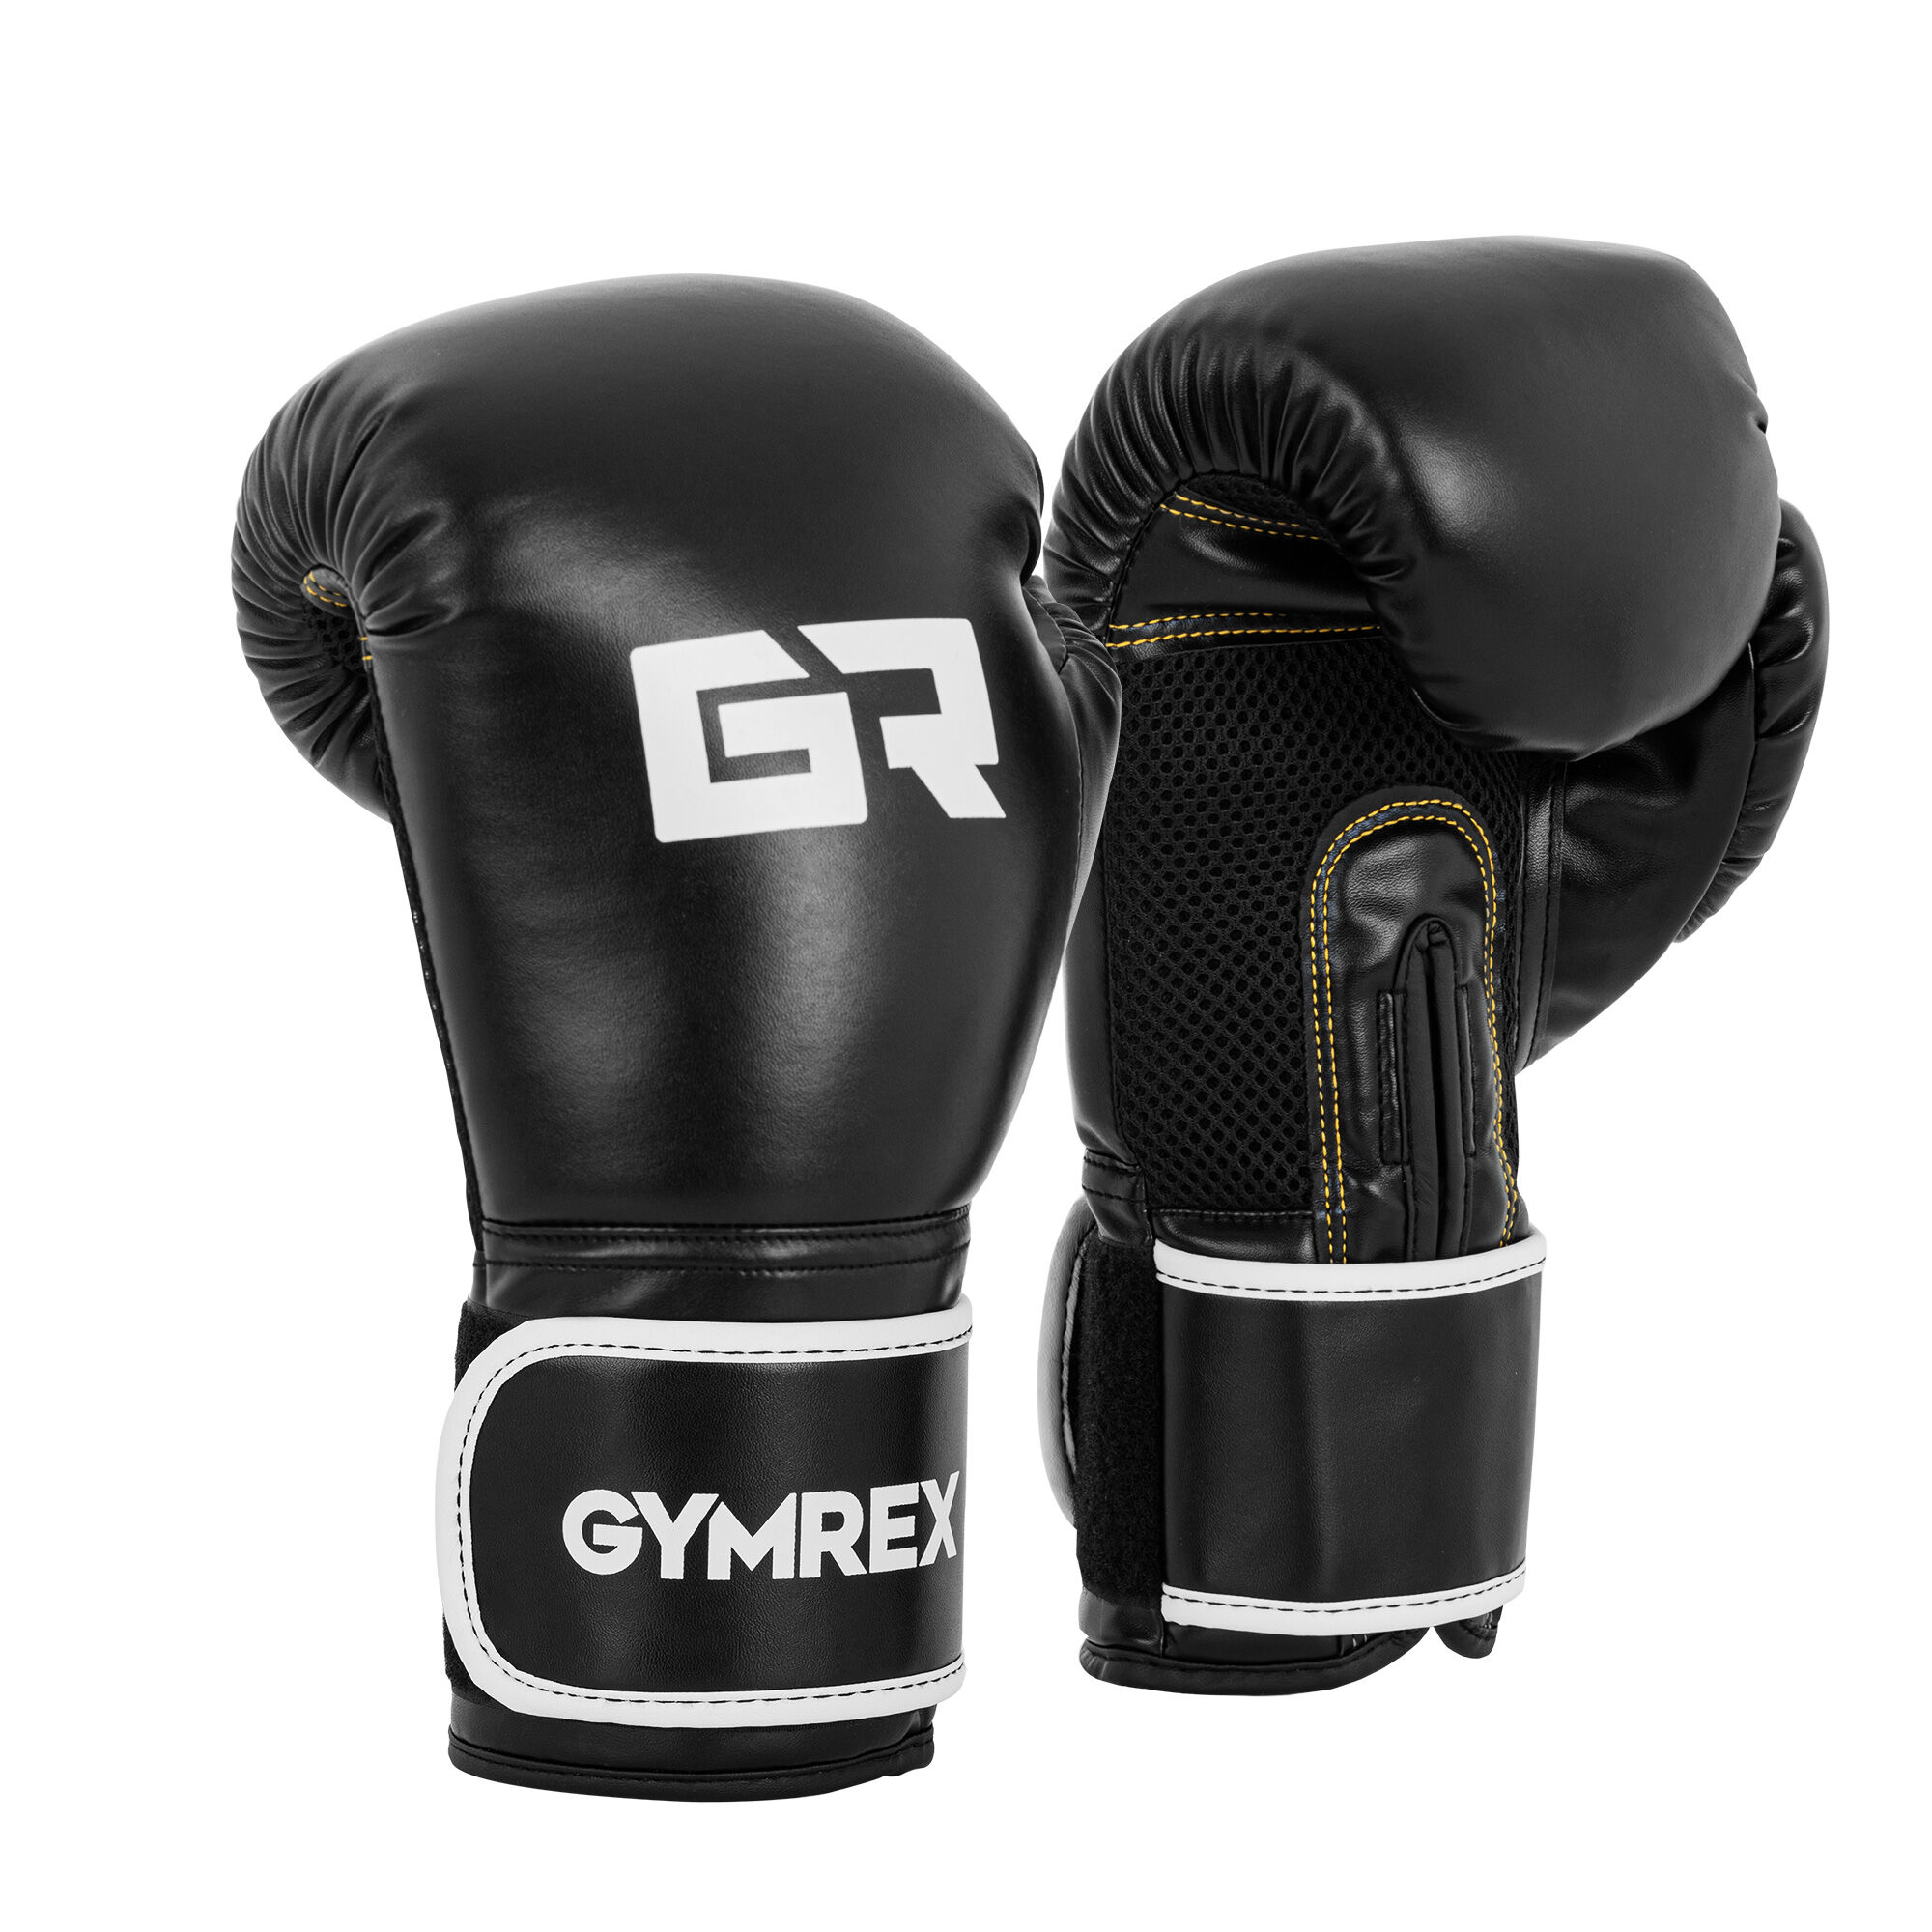 Gymrex Boxerské rukavice - 16 oz - síťovina uvnitř - černé GR-BG 16B